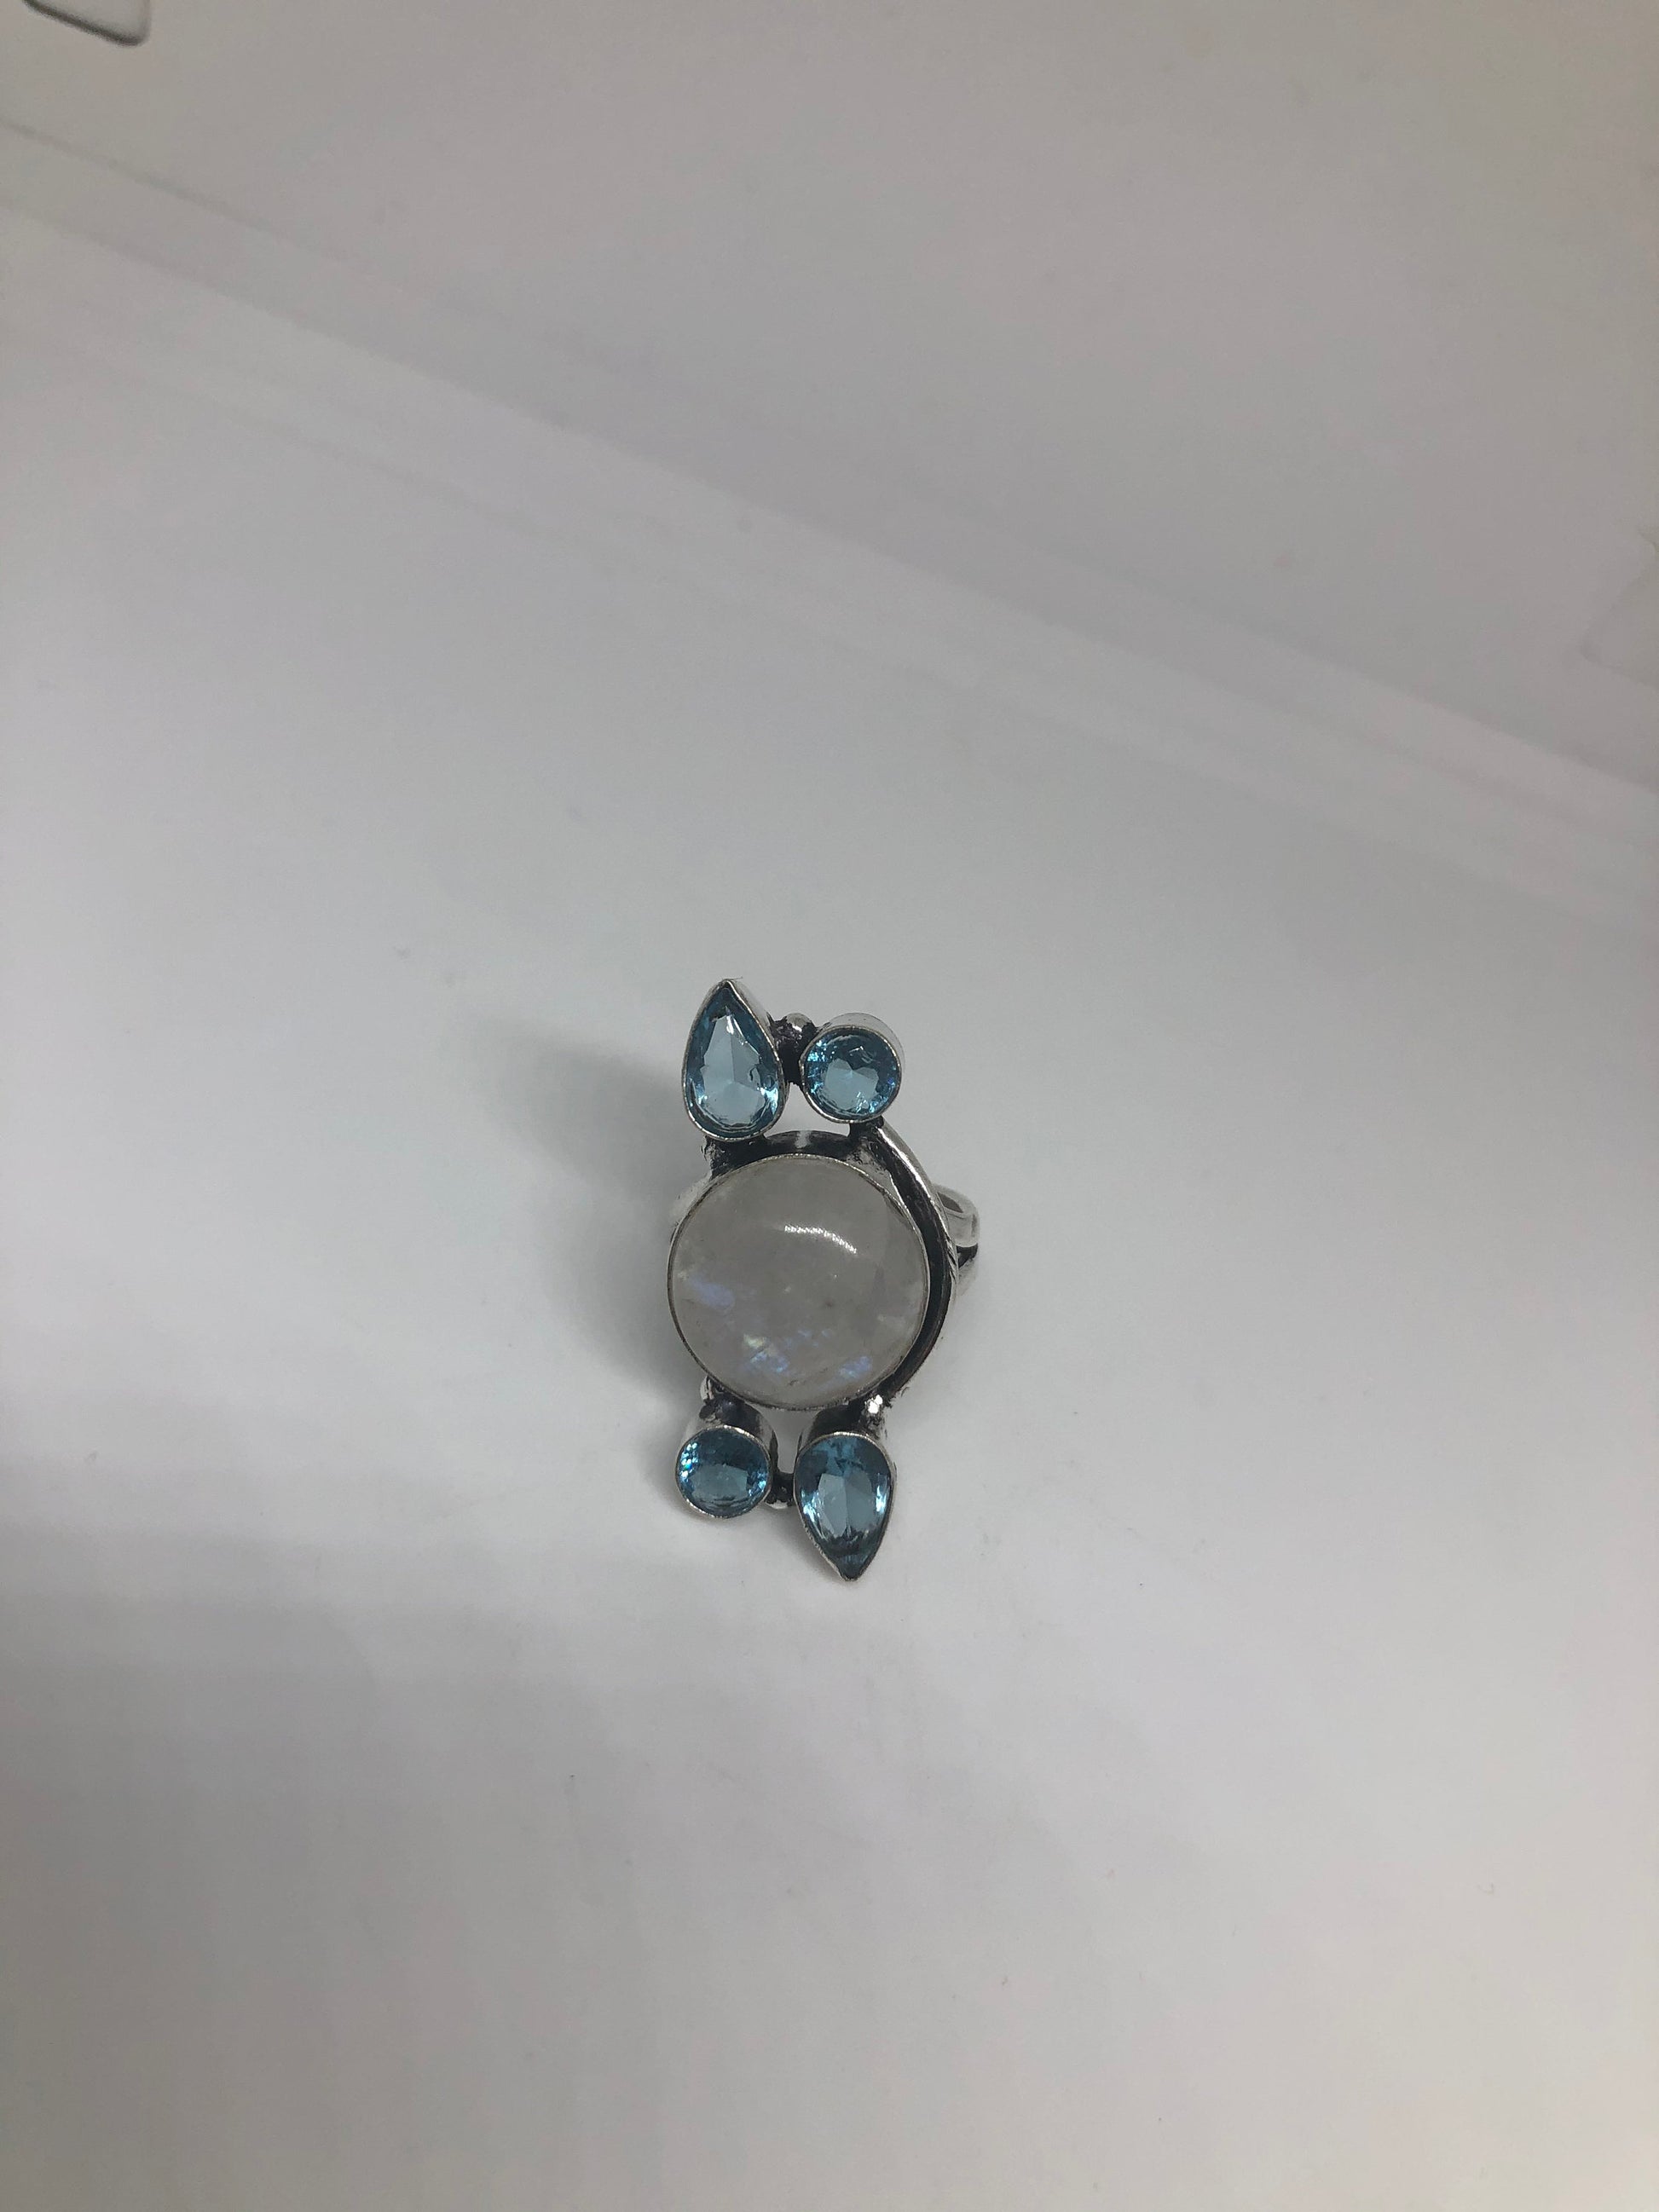 Vintage Genuine Blue White Rainbow Moonstone Aquamarine Ring Size 6